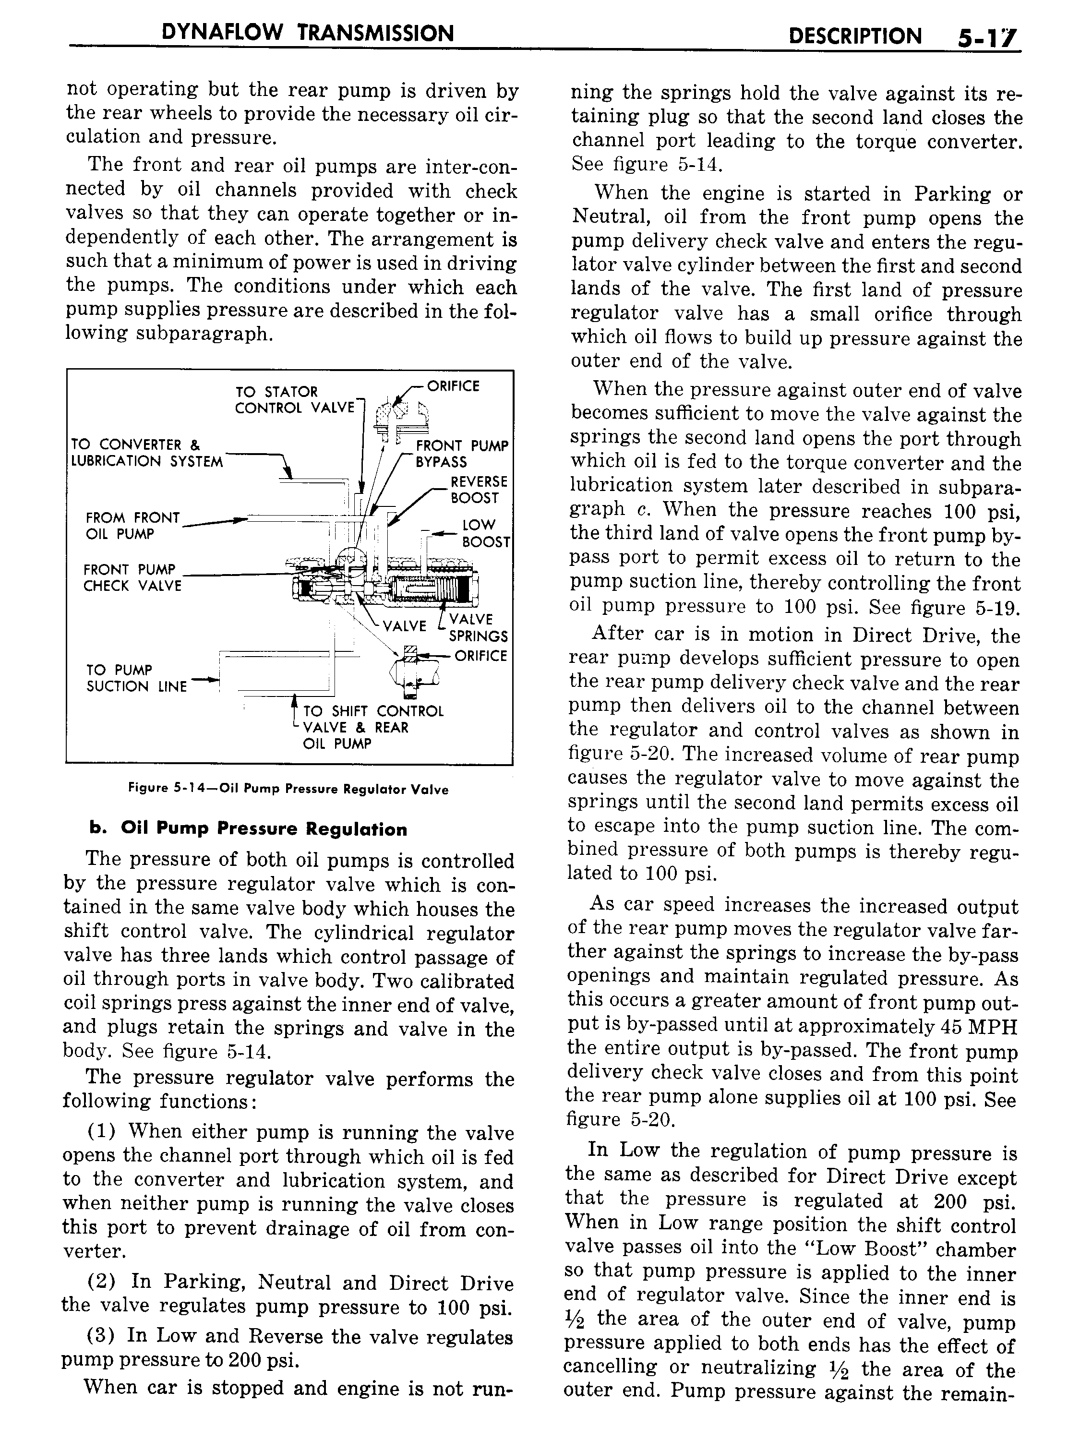 n_06 1957 Buick Shop Manual - Dynaflow-017-017.jpg